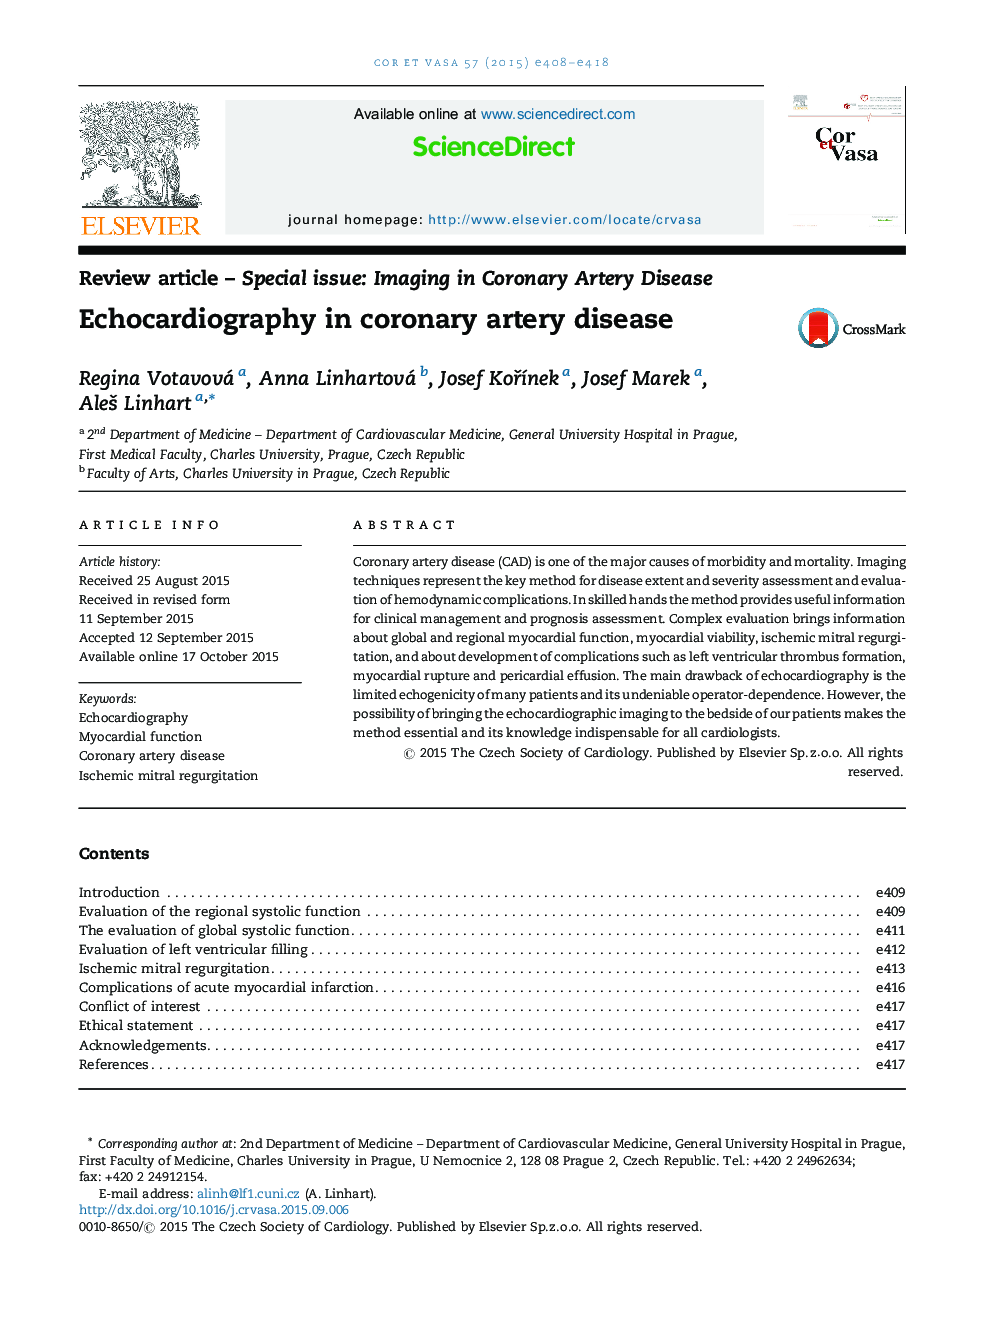 Echocardiography in coronary artery disease